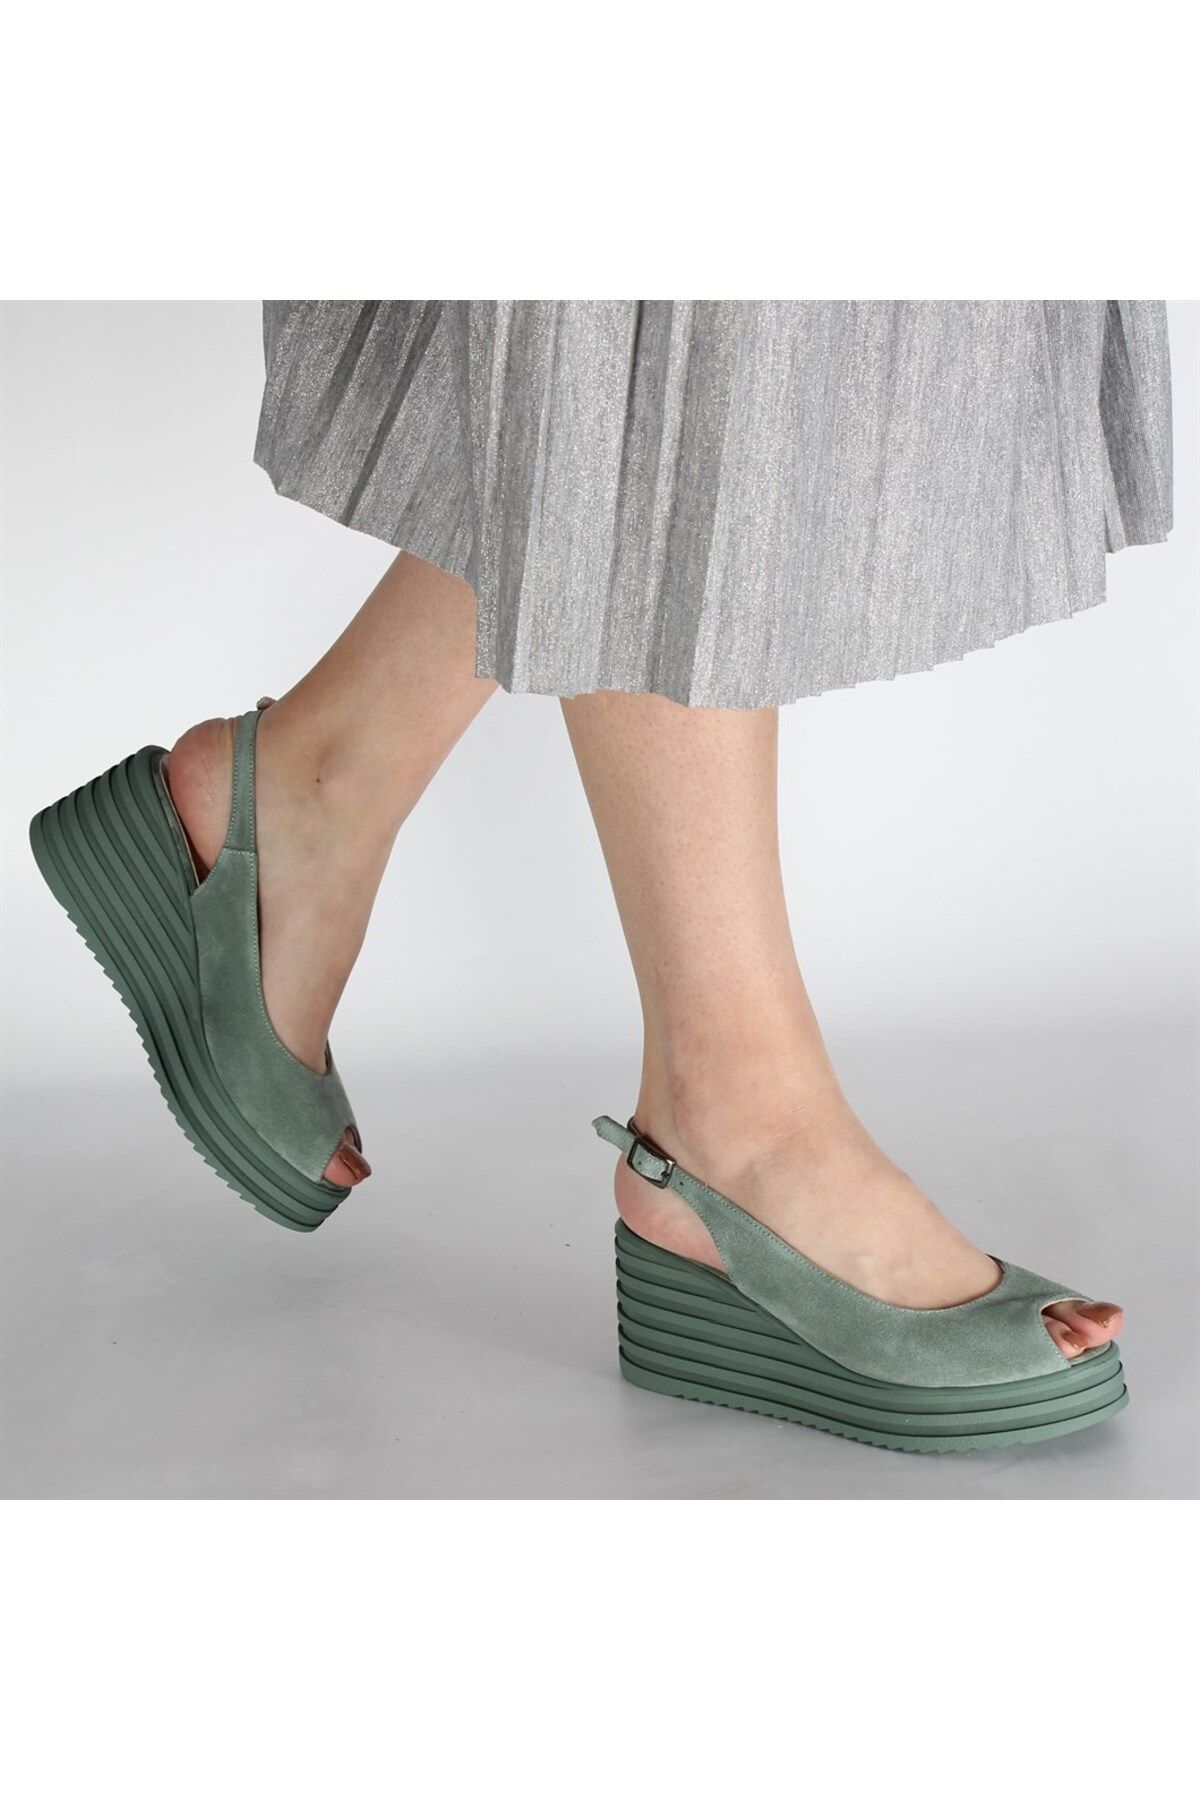 Celal Gültekin Yeşil Kadın Süet Sandalet 537 20200-17534